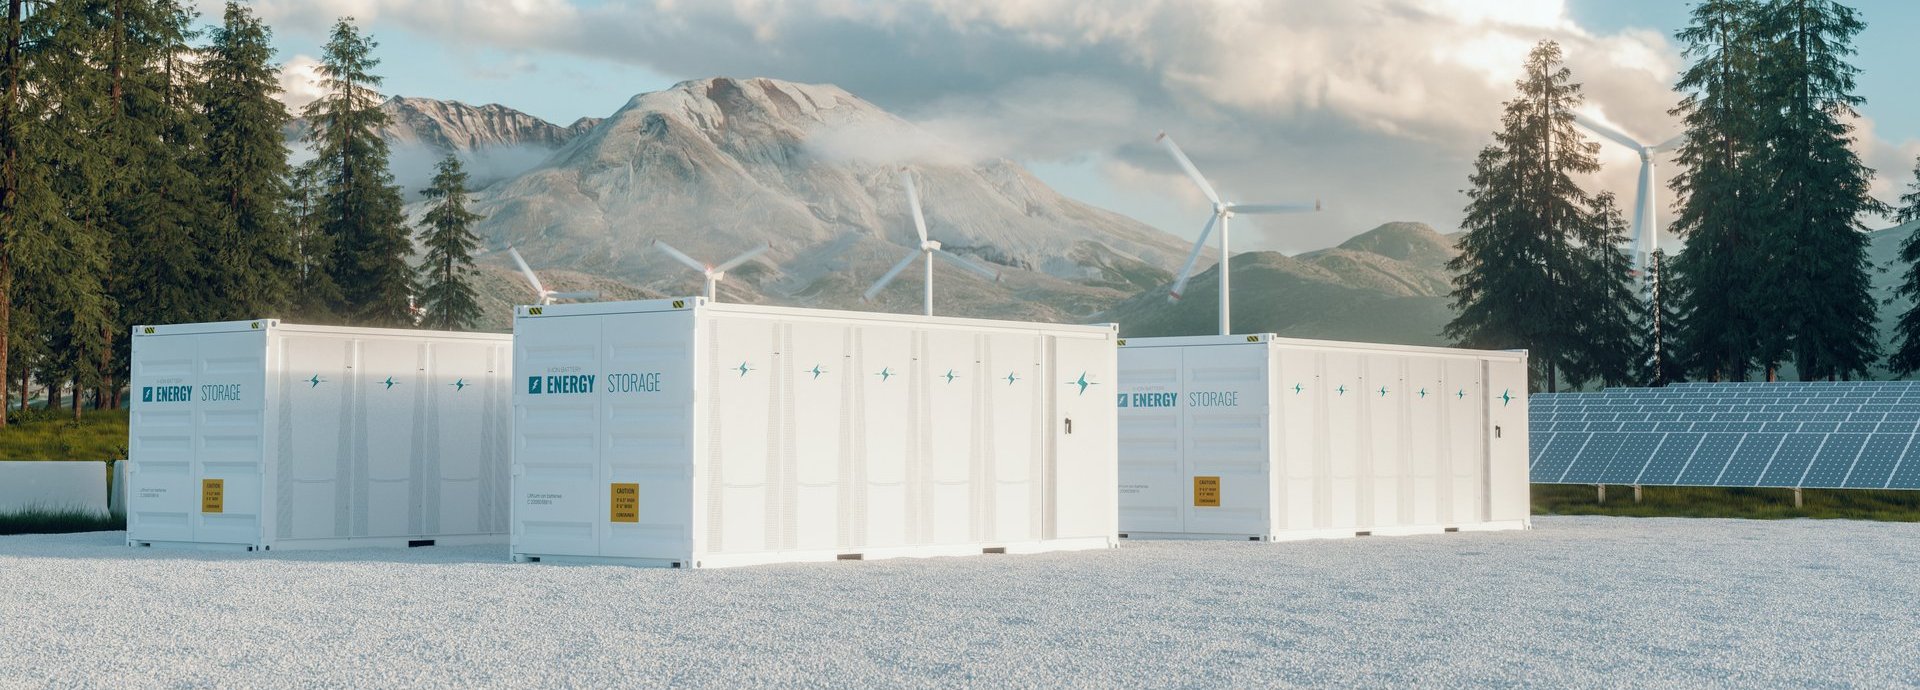 Modernes Container-Batteriespeicherkraftwerk, begleitet von Sonnenkollektoren und Windkraftanlagen in der Natur mit Mount St. Helens im Hintergrund. 3D-Rendering.